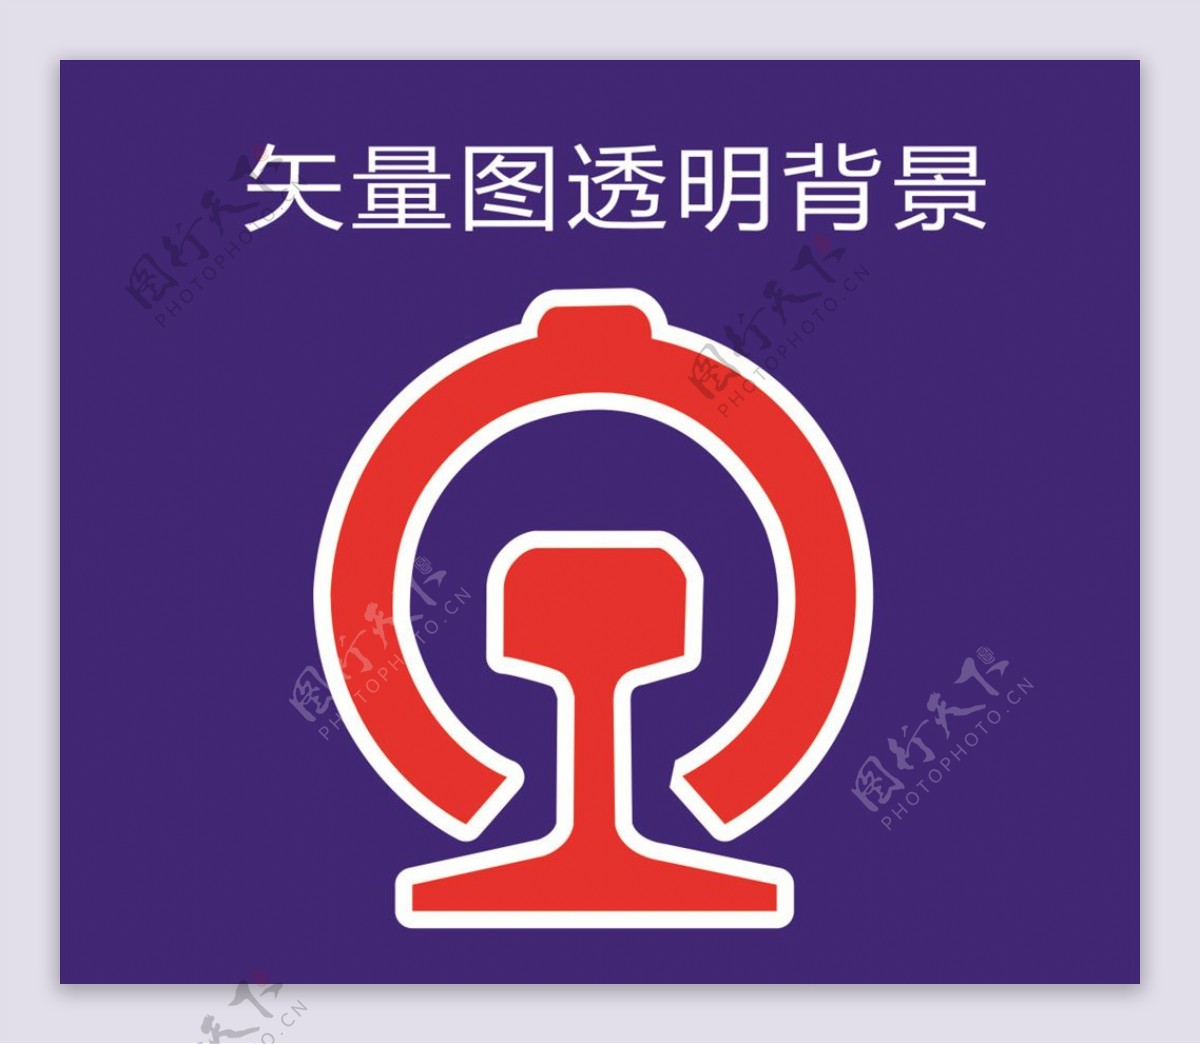 铁路局logo标志标识